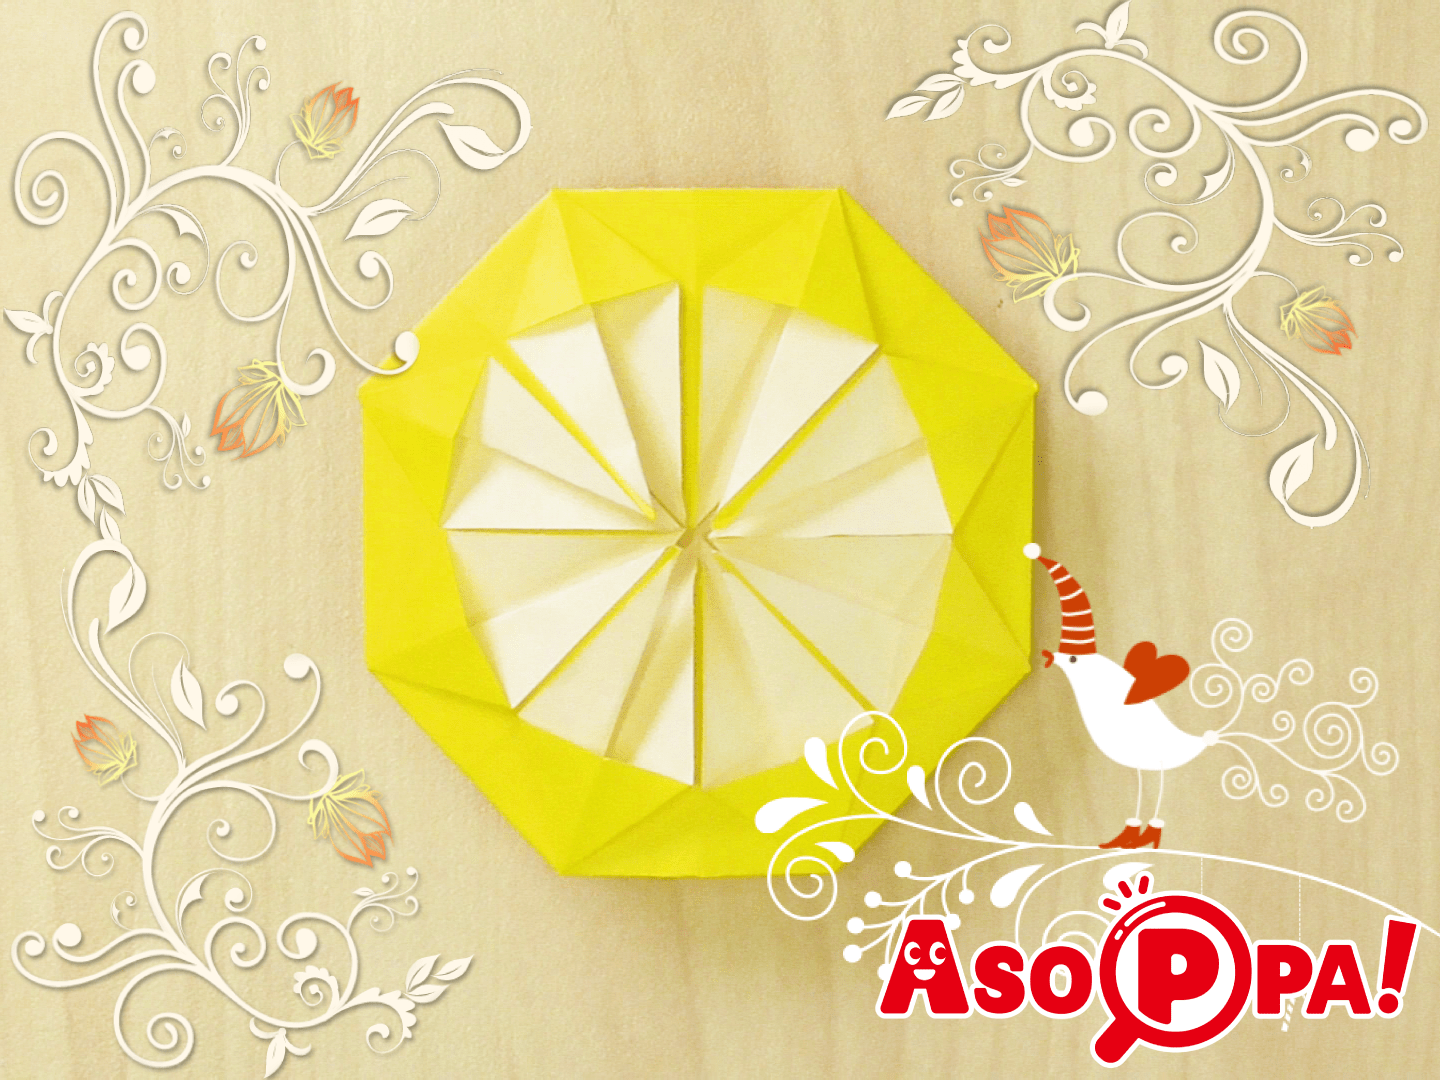 菊の花が分かりやすく折れる 折り紙 動画あり Asoppa レシピ あそっぱ